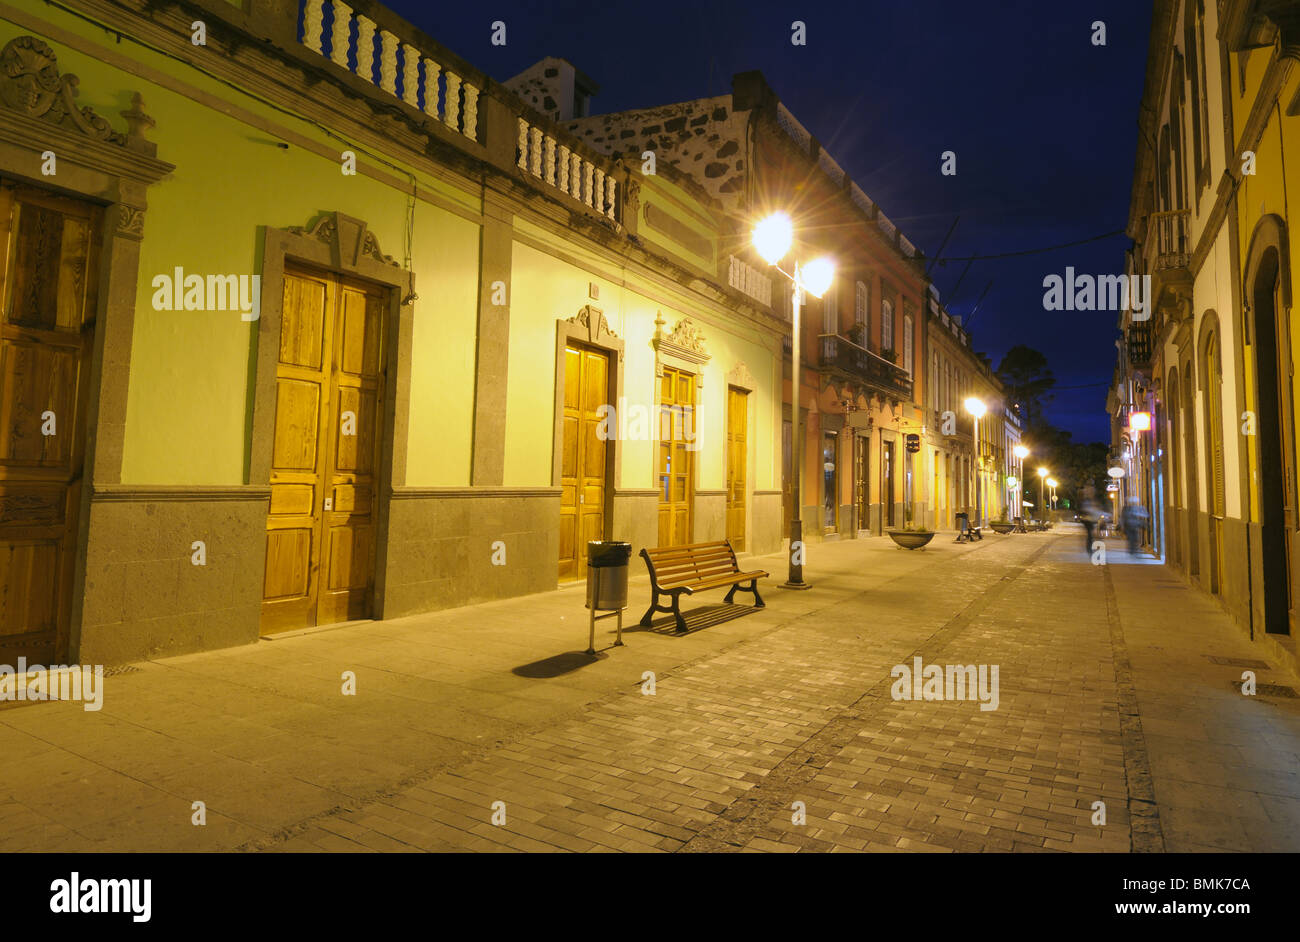 City street illuminated at night. Arucas, Grand Canary Island Stock Photo